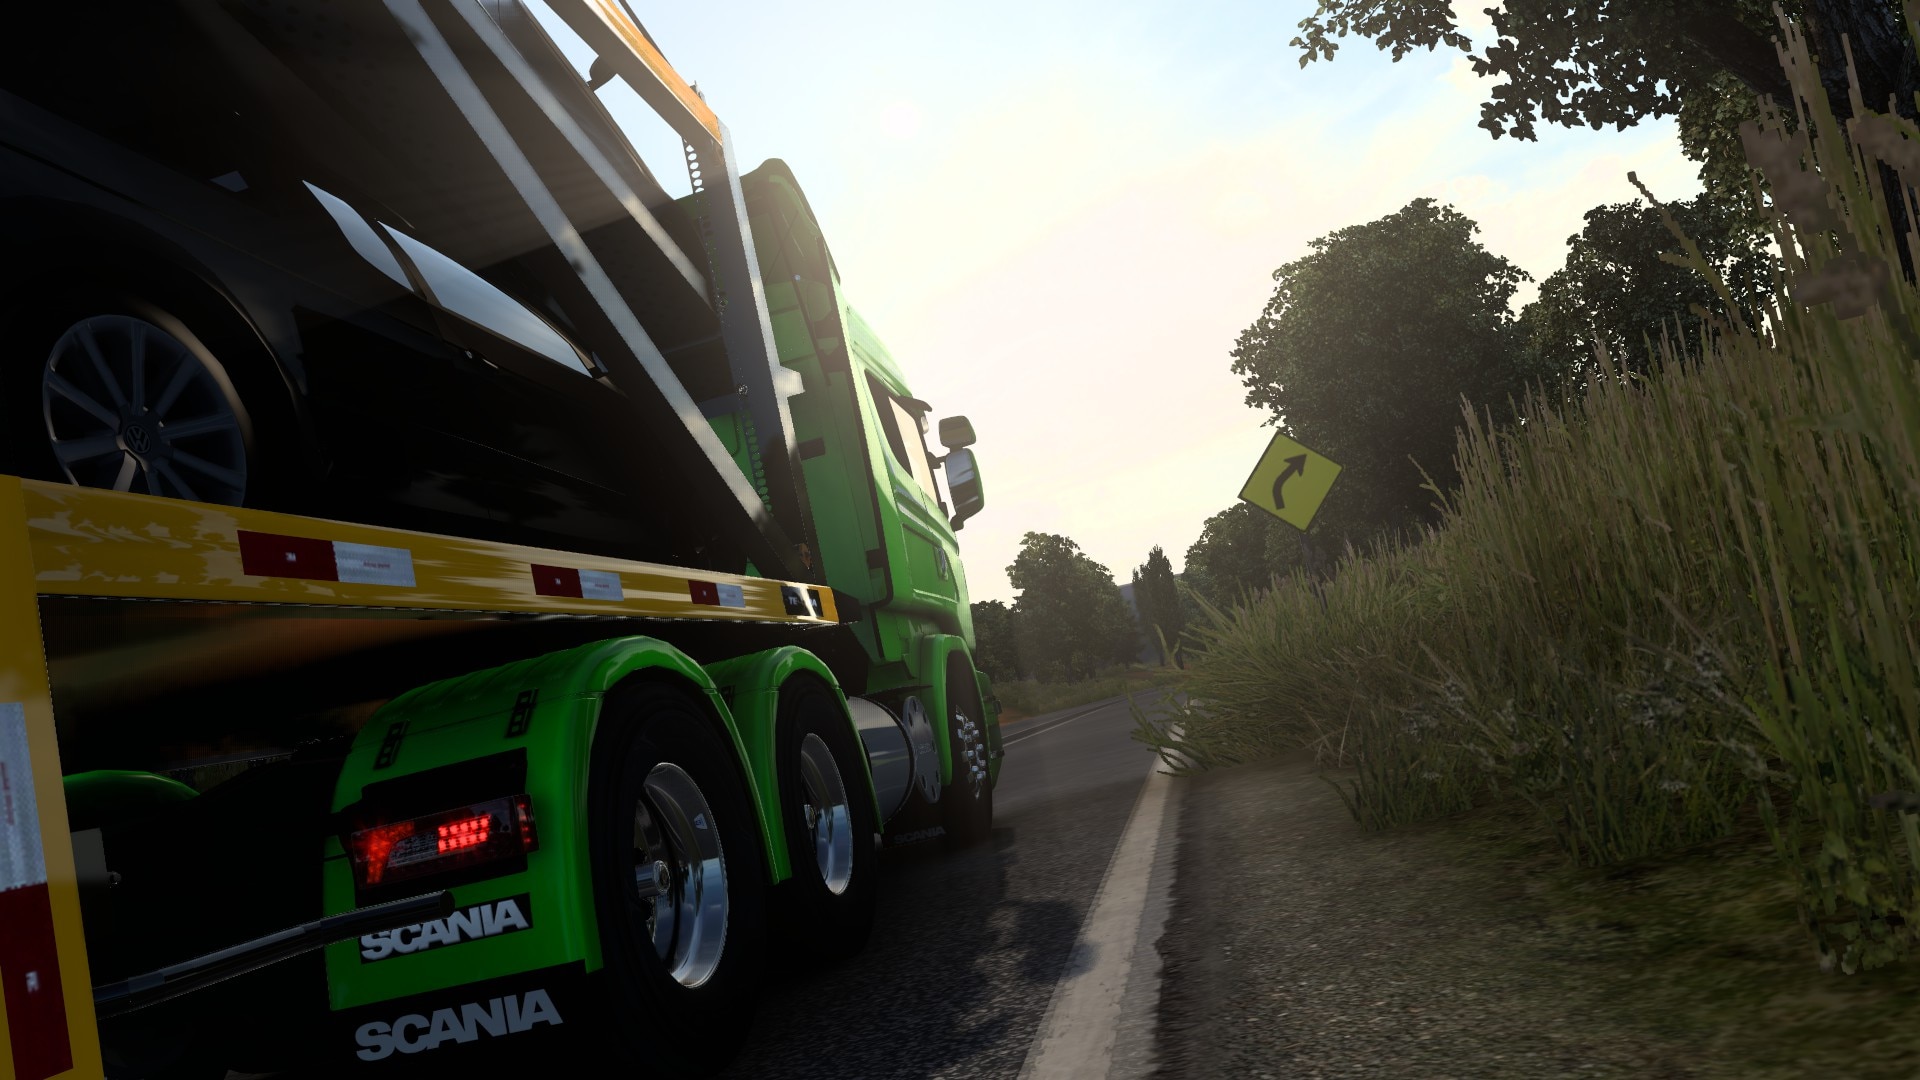 Caminhão - Man Editado Estilo BR Rebaixado V.1.0 Para V.1.26.X By:  Cacarécos Gamer - Blog Euro Truck 2 - Mods ETS2, Mods Euro Truck Simulator  2 e Muito Mais